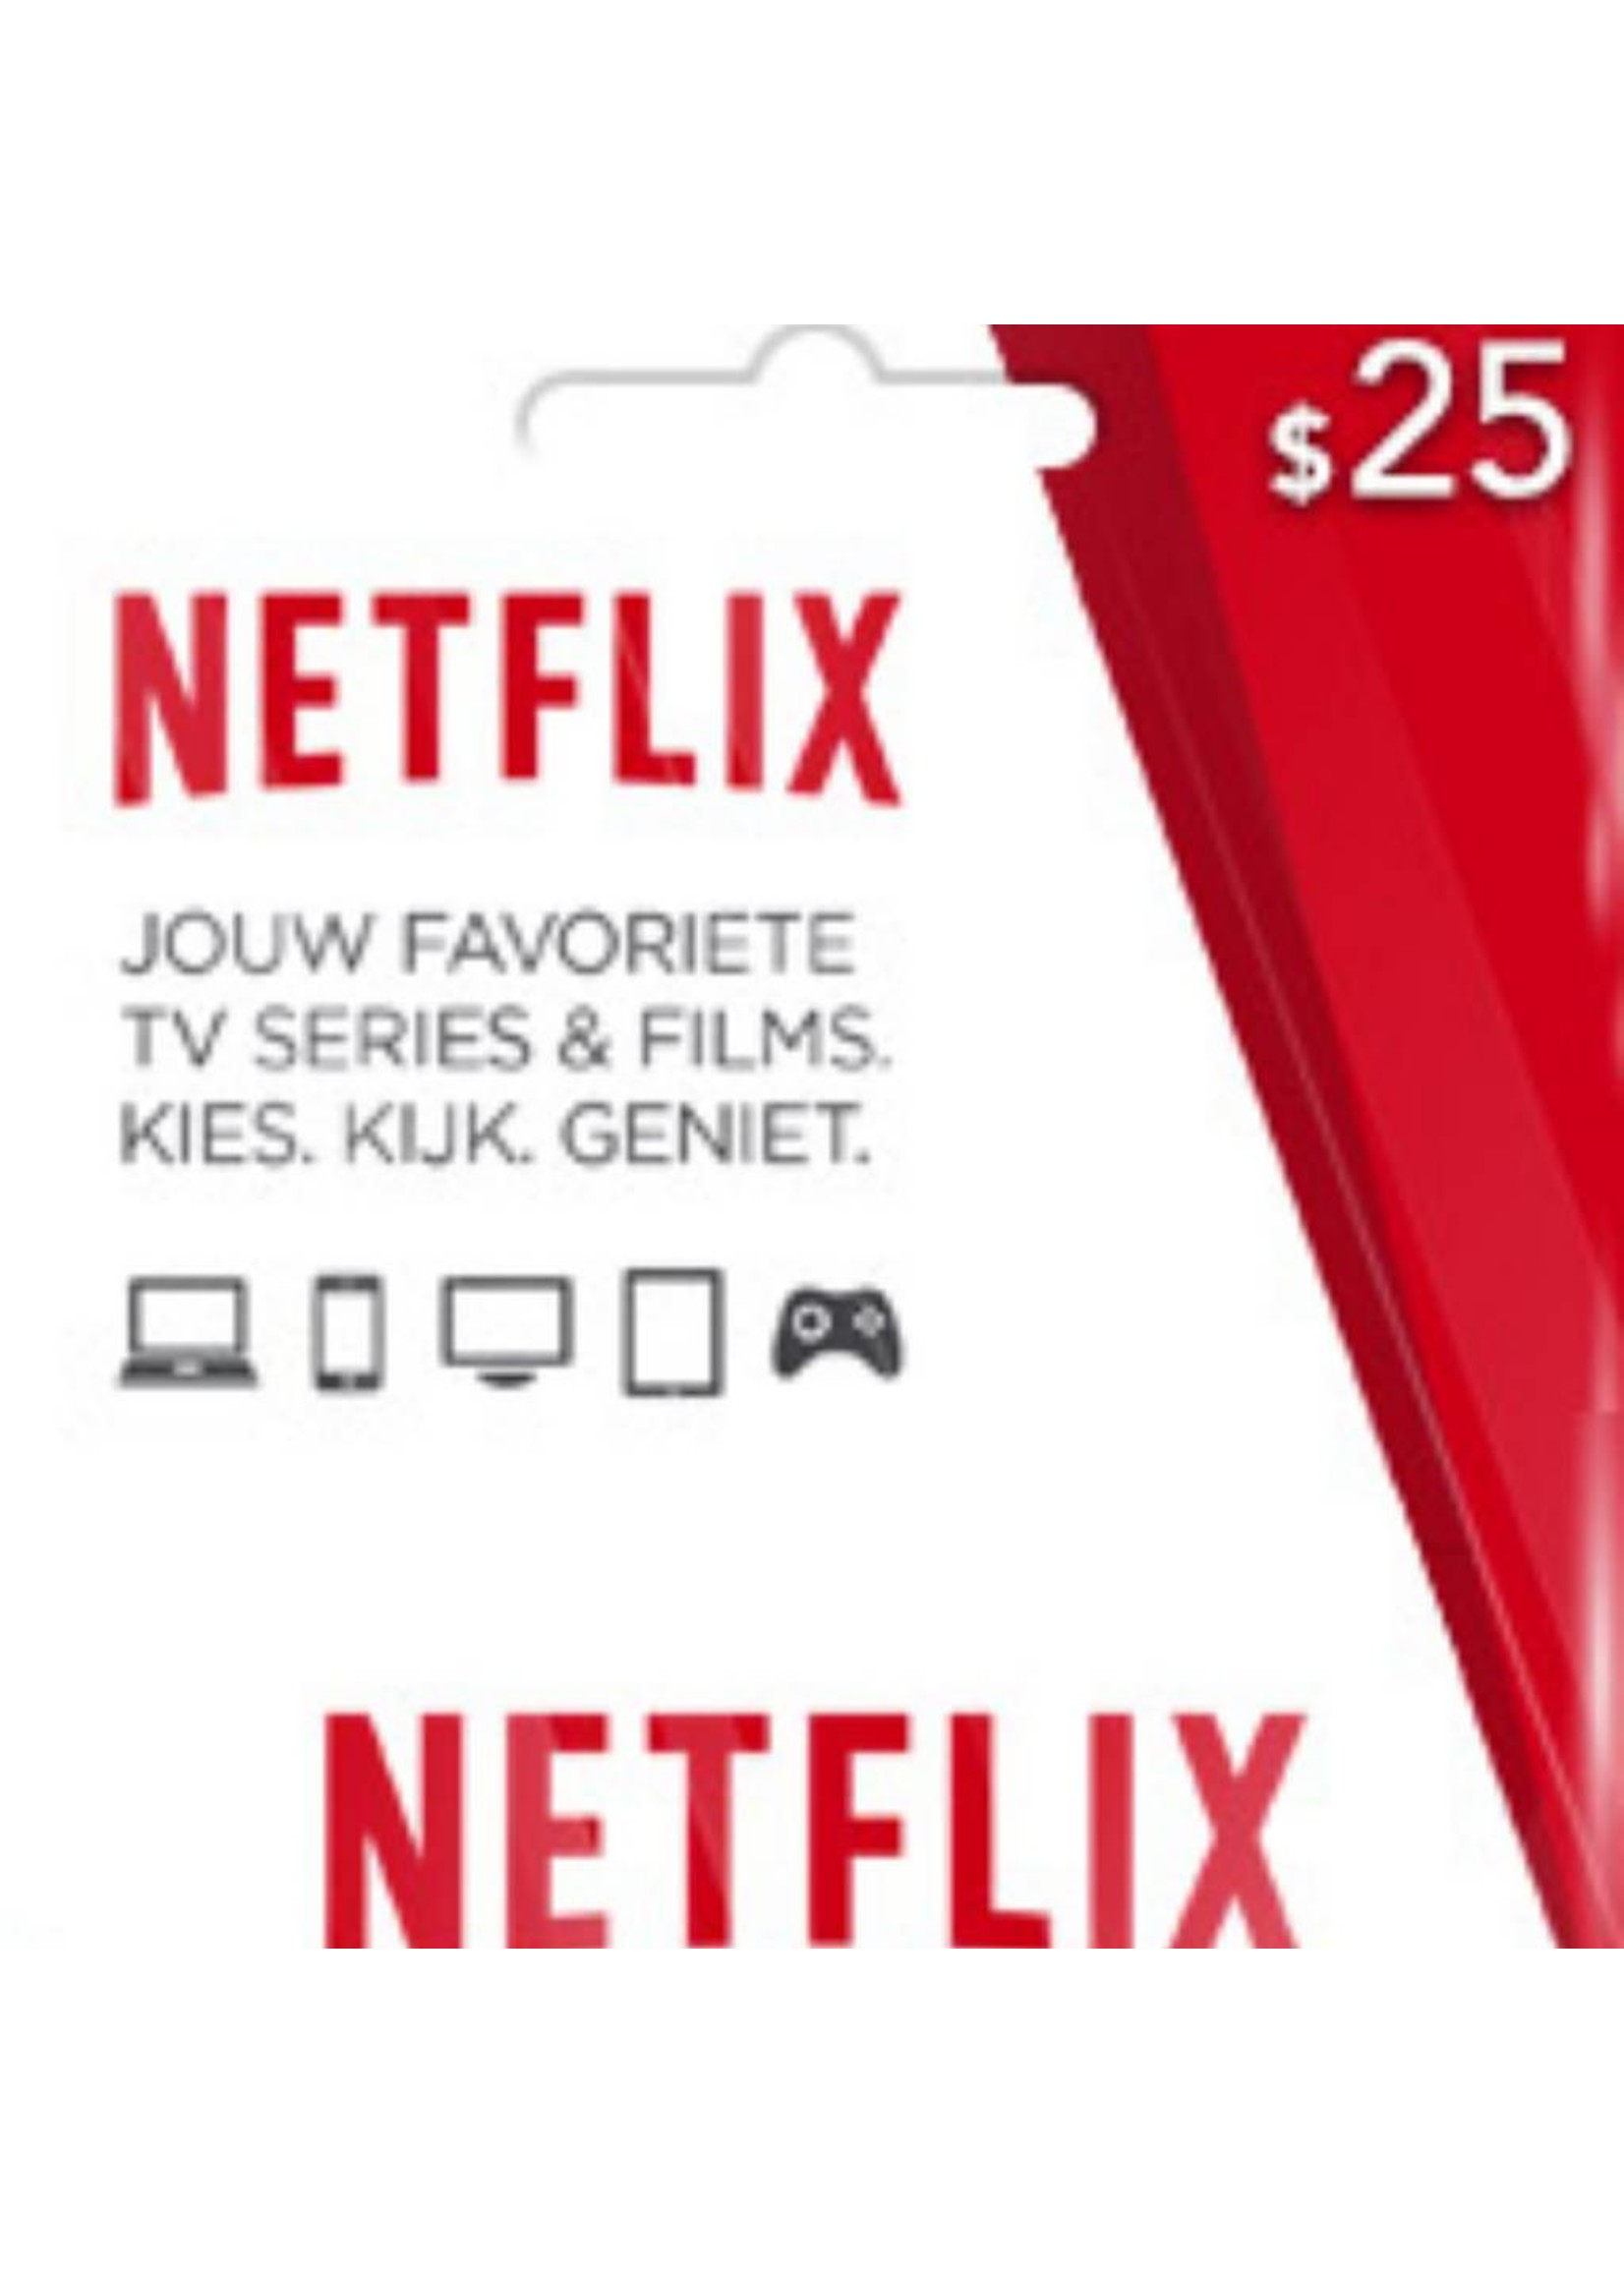 Netflix $25 Gift Card